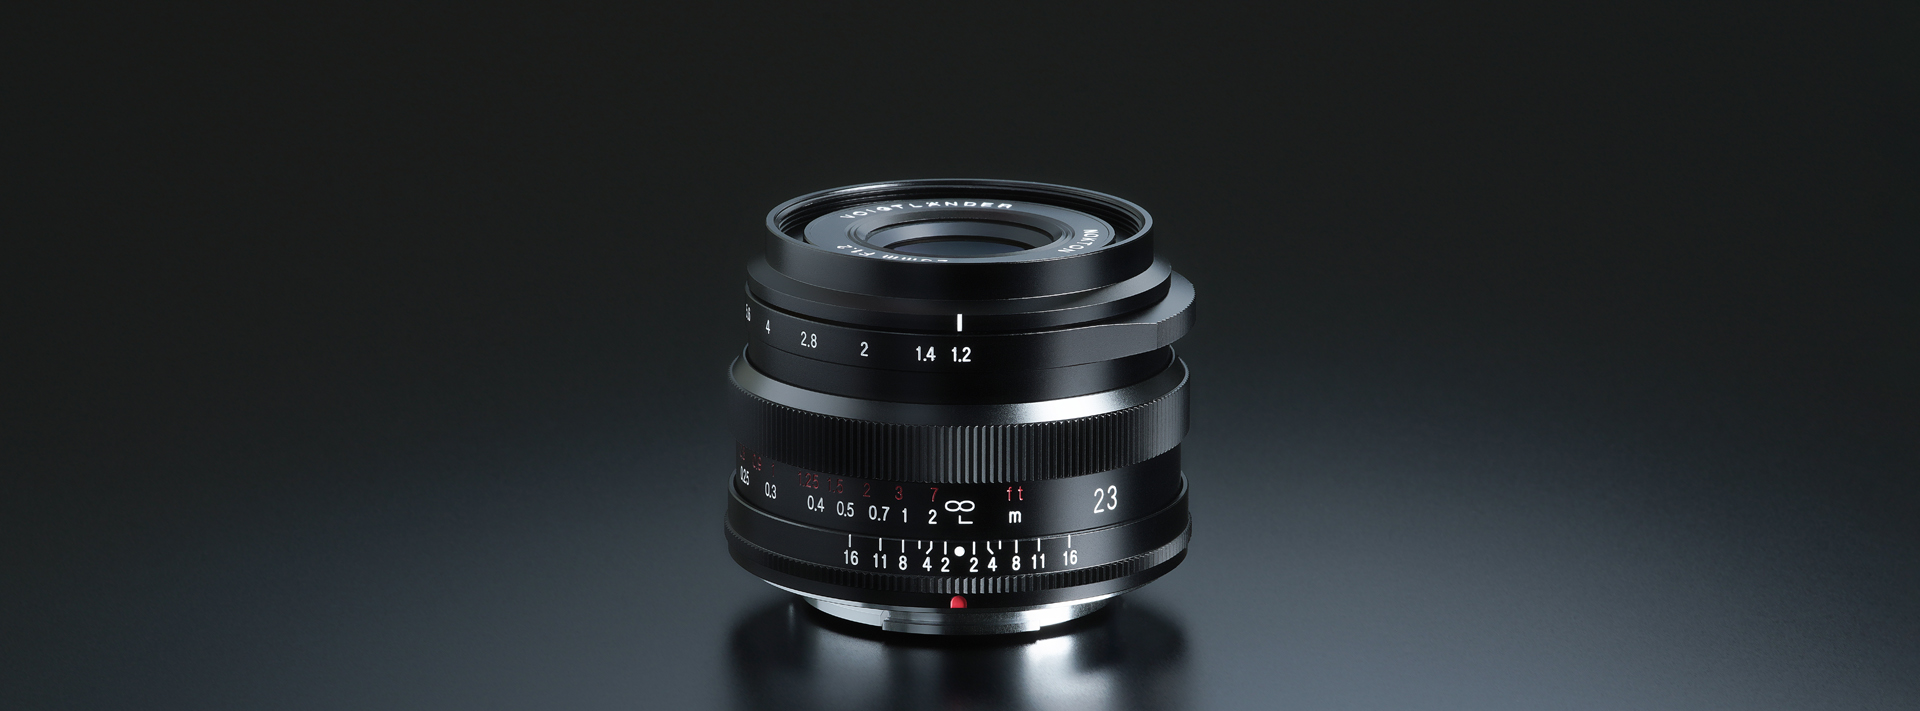 カメラ レンズ(単焦点) NOKTON 23mm F1.2 Aspherical - 株式会社コシナ